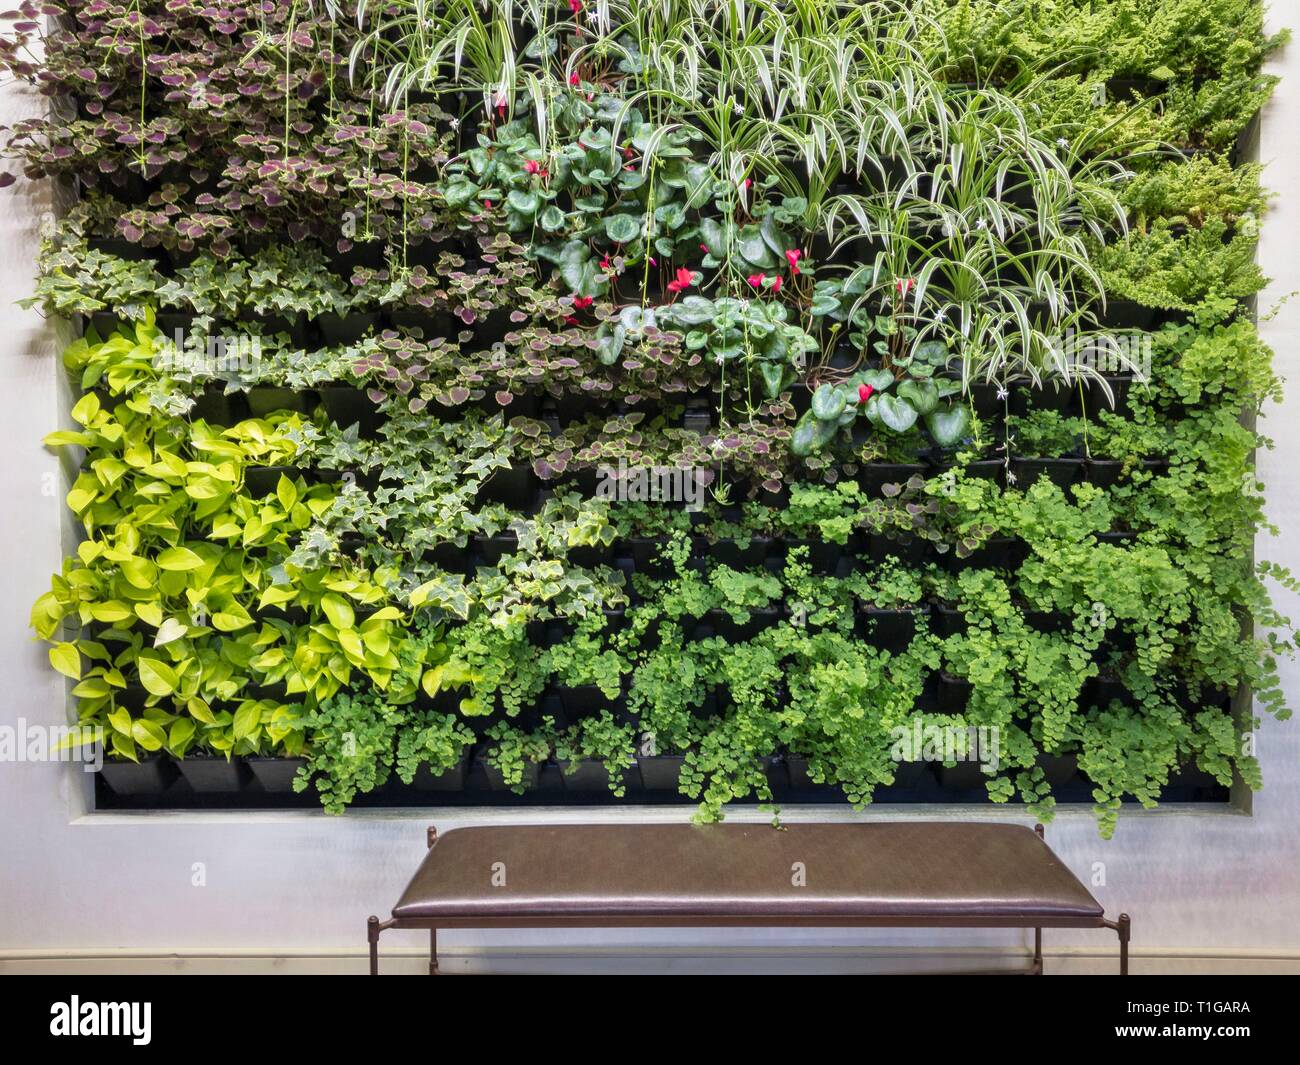 Green wall of houseplants growing indoors with bench, Berkshire Botanical Garden, Stockbridge, Massachusetts. Stock Photo